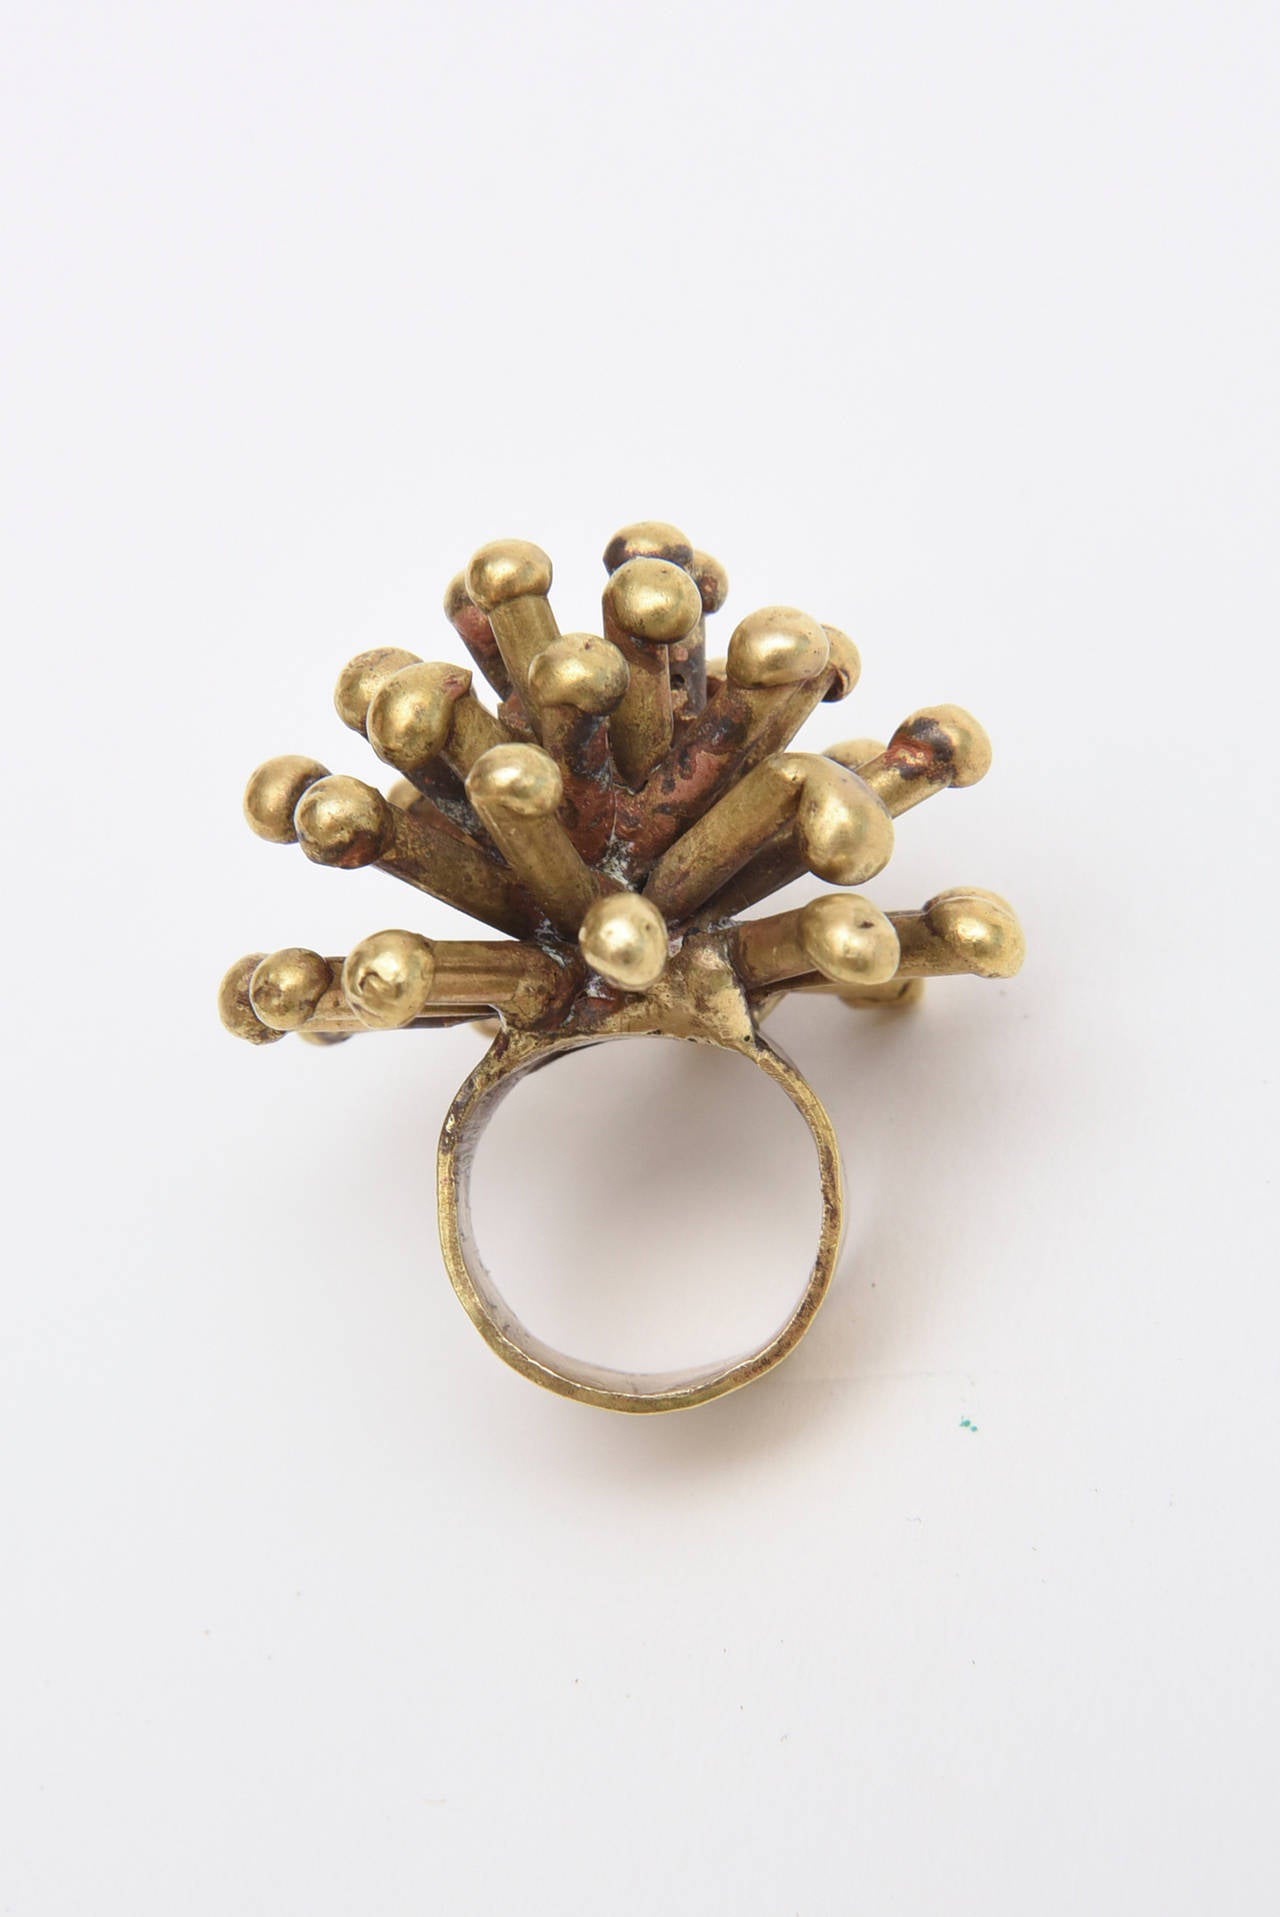 Bronze Studio Sputnik Starburst Sculptural Ring Attributed to Pal Kepenes For Sale 2